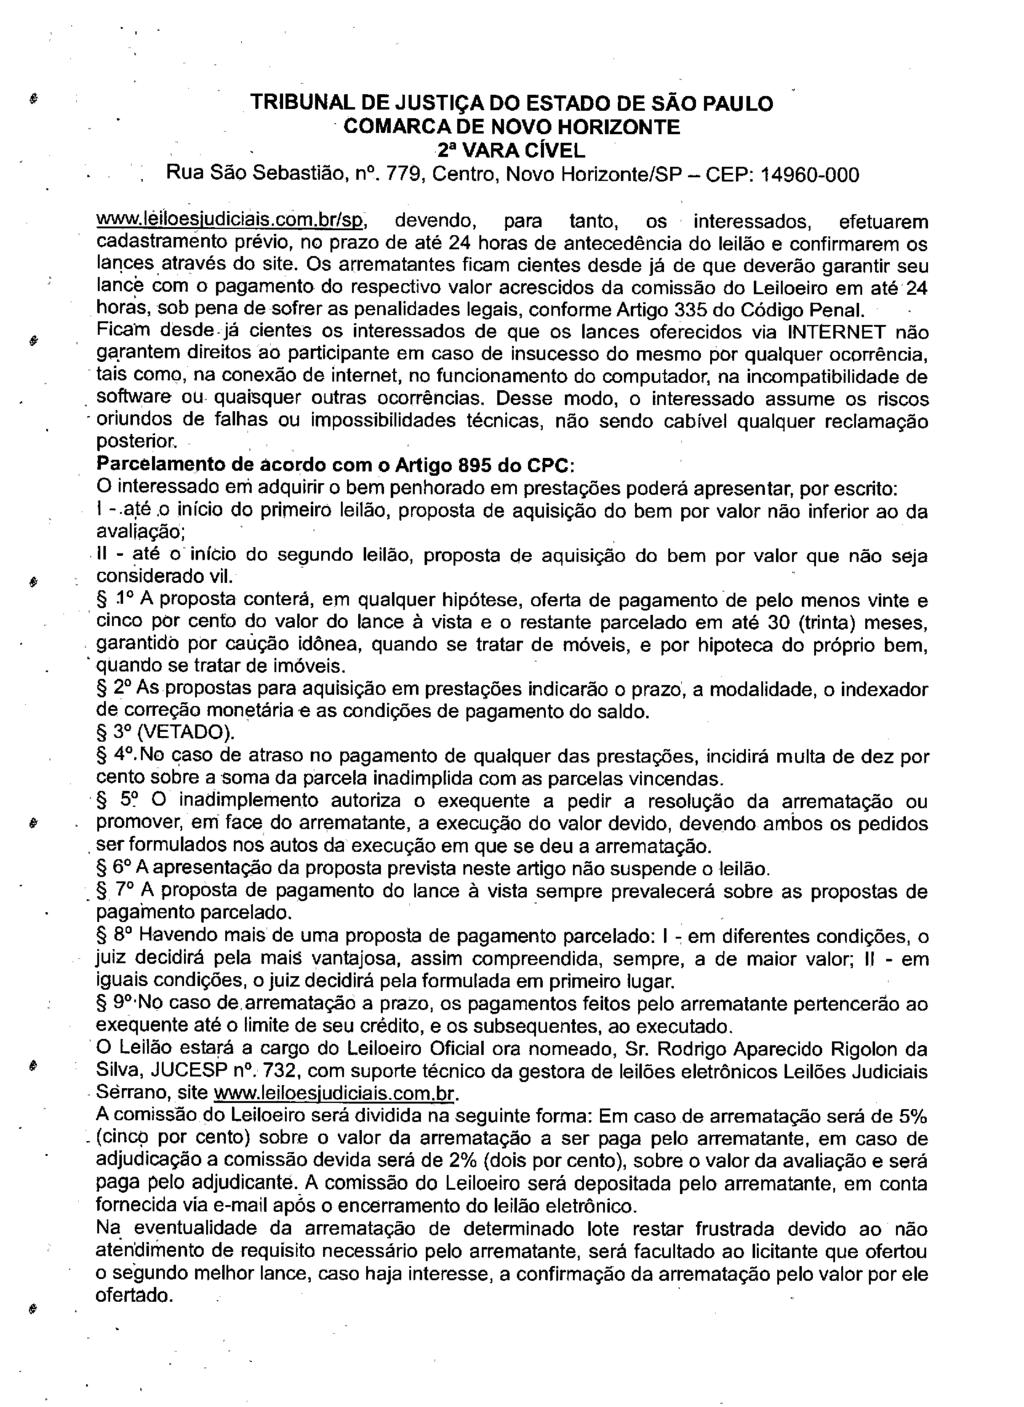 fls. 71 Este documento é cópia do original, assinado digitalmente por LUZIA REGIS DE OLIVEIRA DUARTE, liberado nos autos em 19/06/2019 às 13:09.